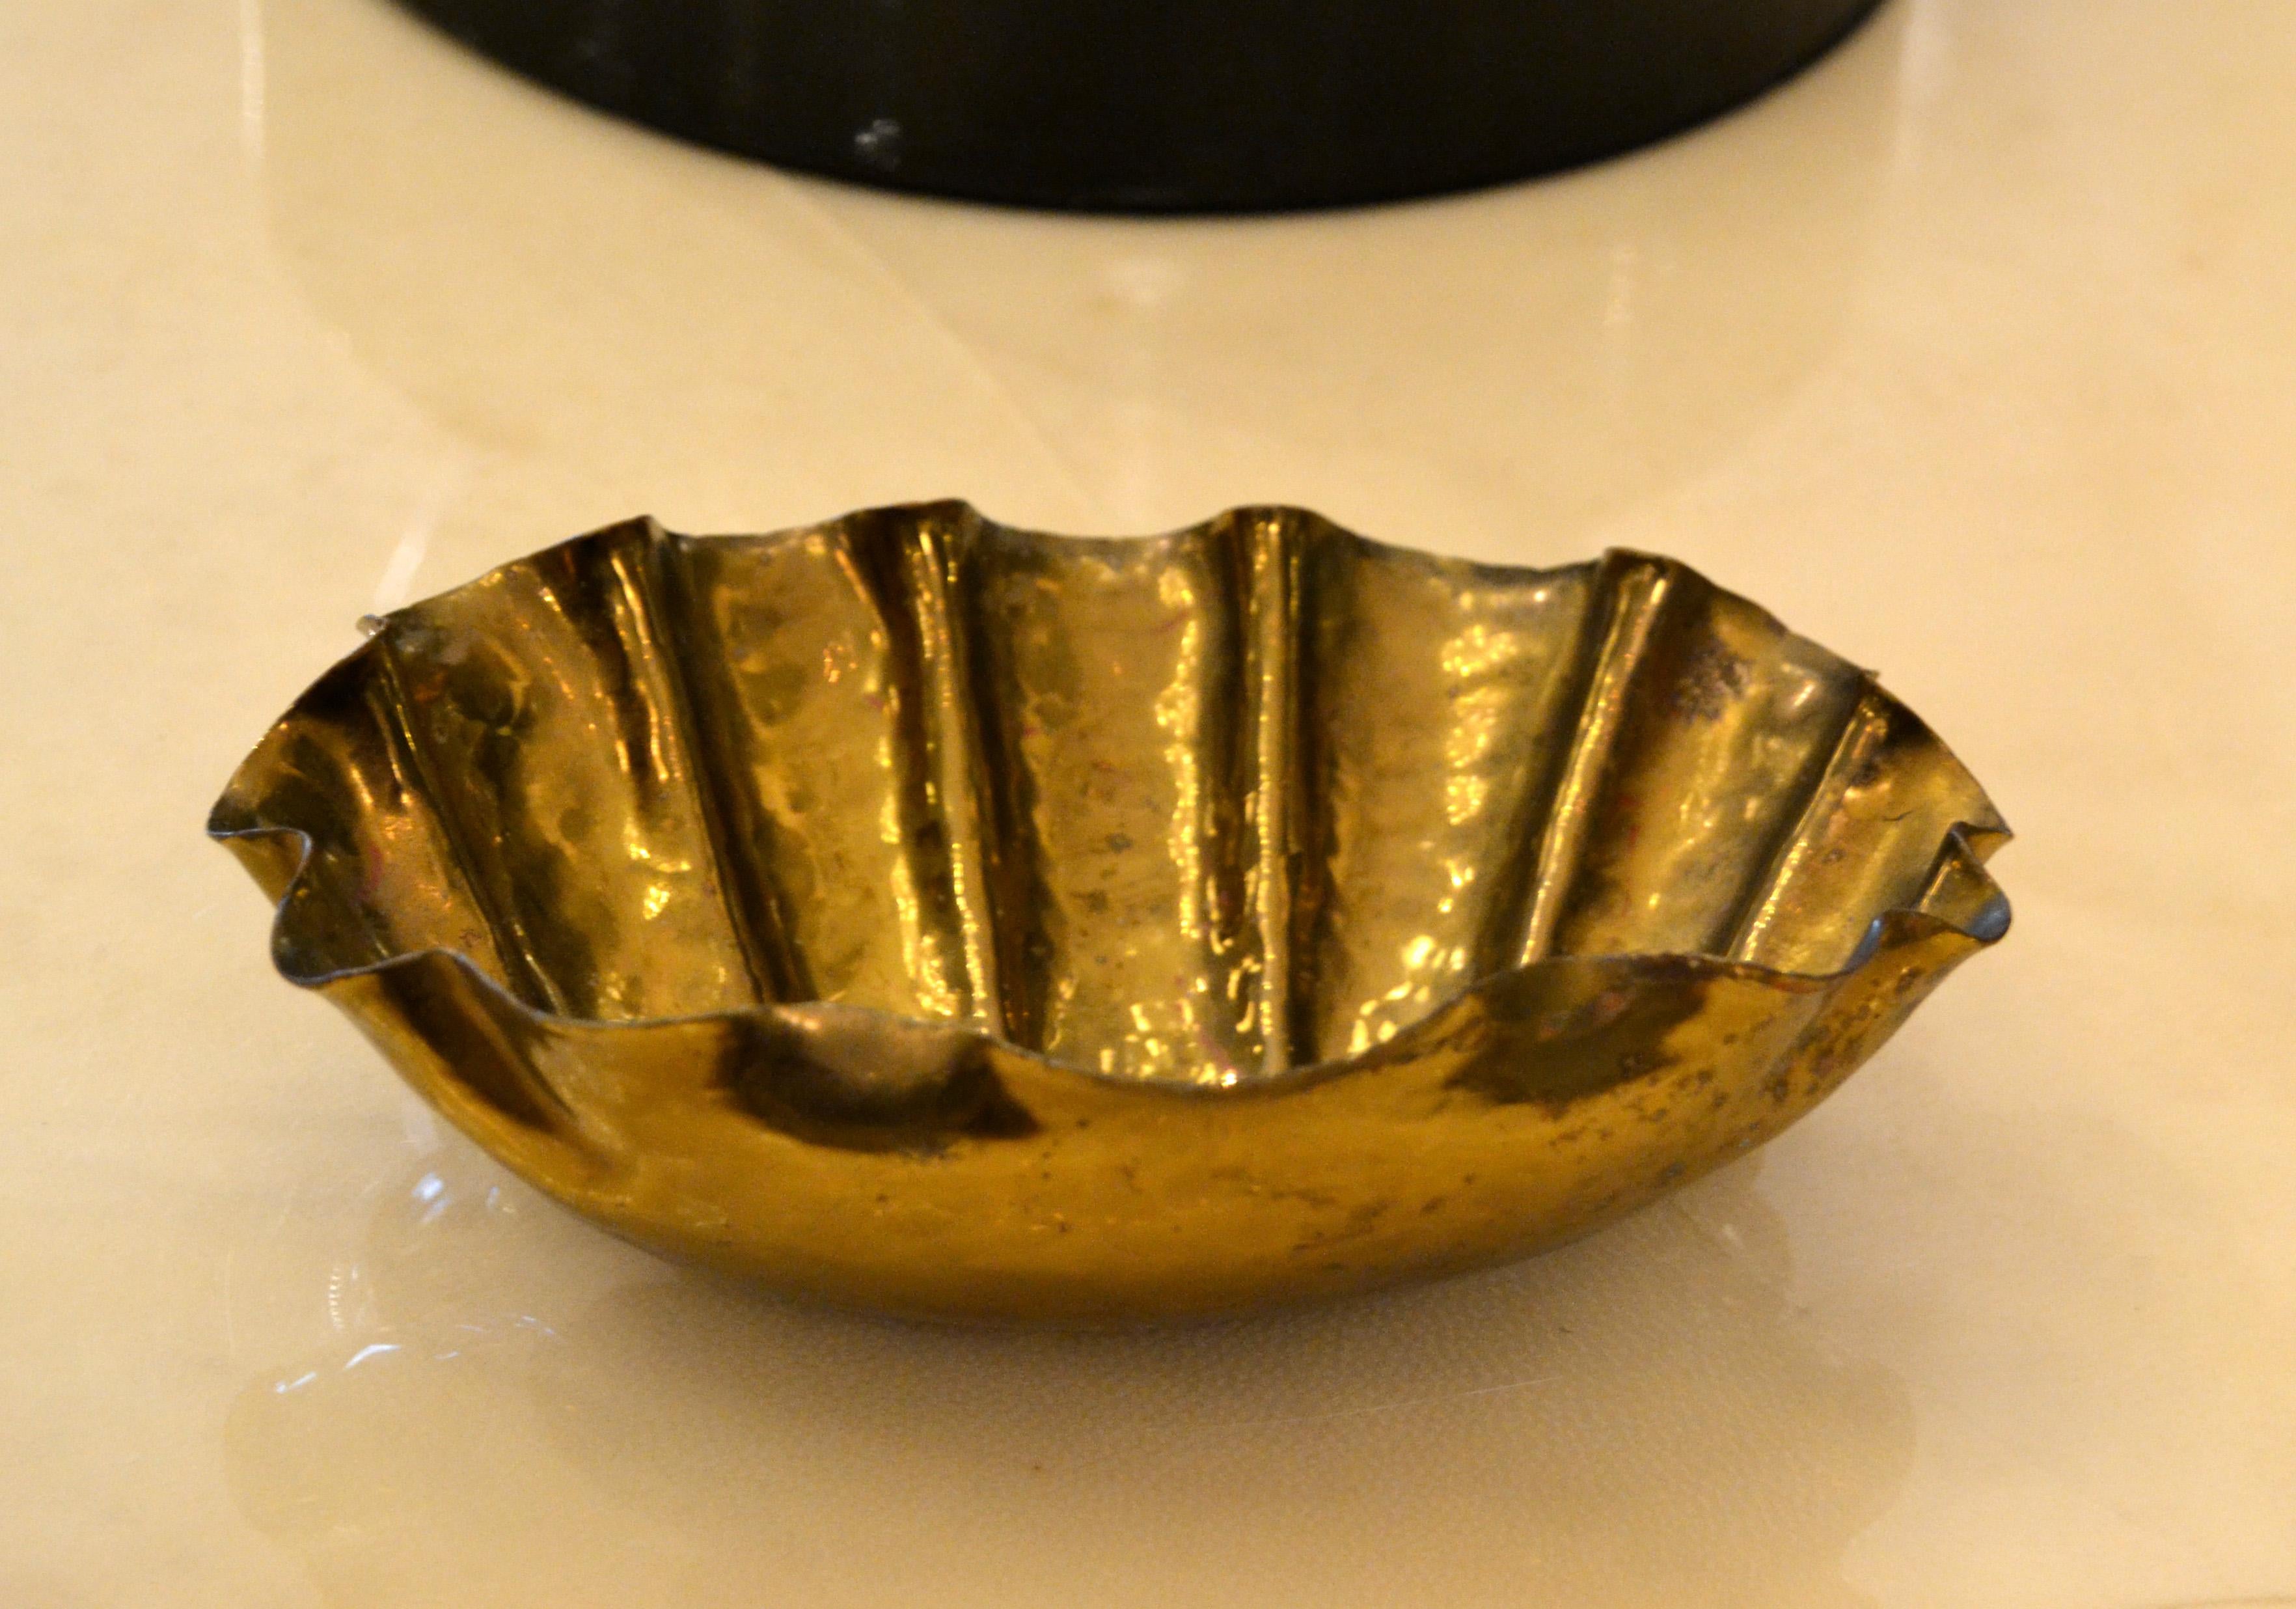 Atemberaubende Mid-Century Modern golden gehämmert handgefertigte Bronze Clamshell Fuß Schale, Schlüssel Schale, Catchall, in Italien gemacht.
Auf dem Sockel markiert.
Große Handwerkskunst mit Eleganz.
             